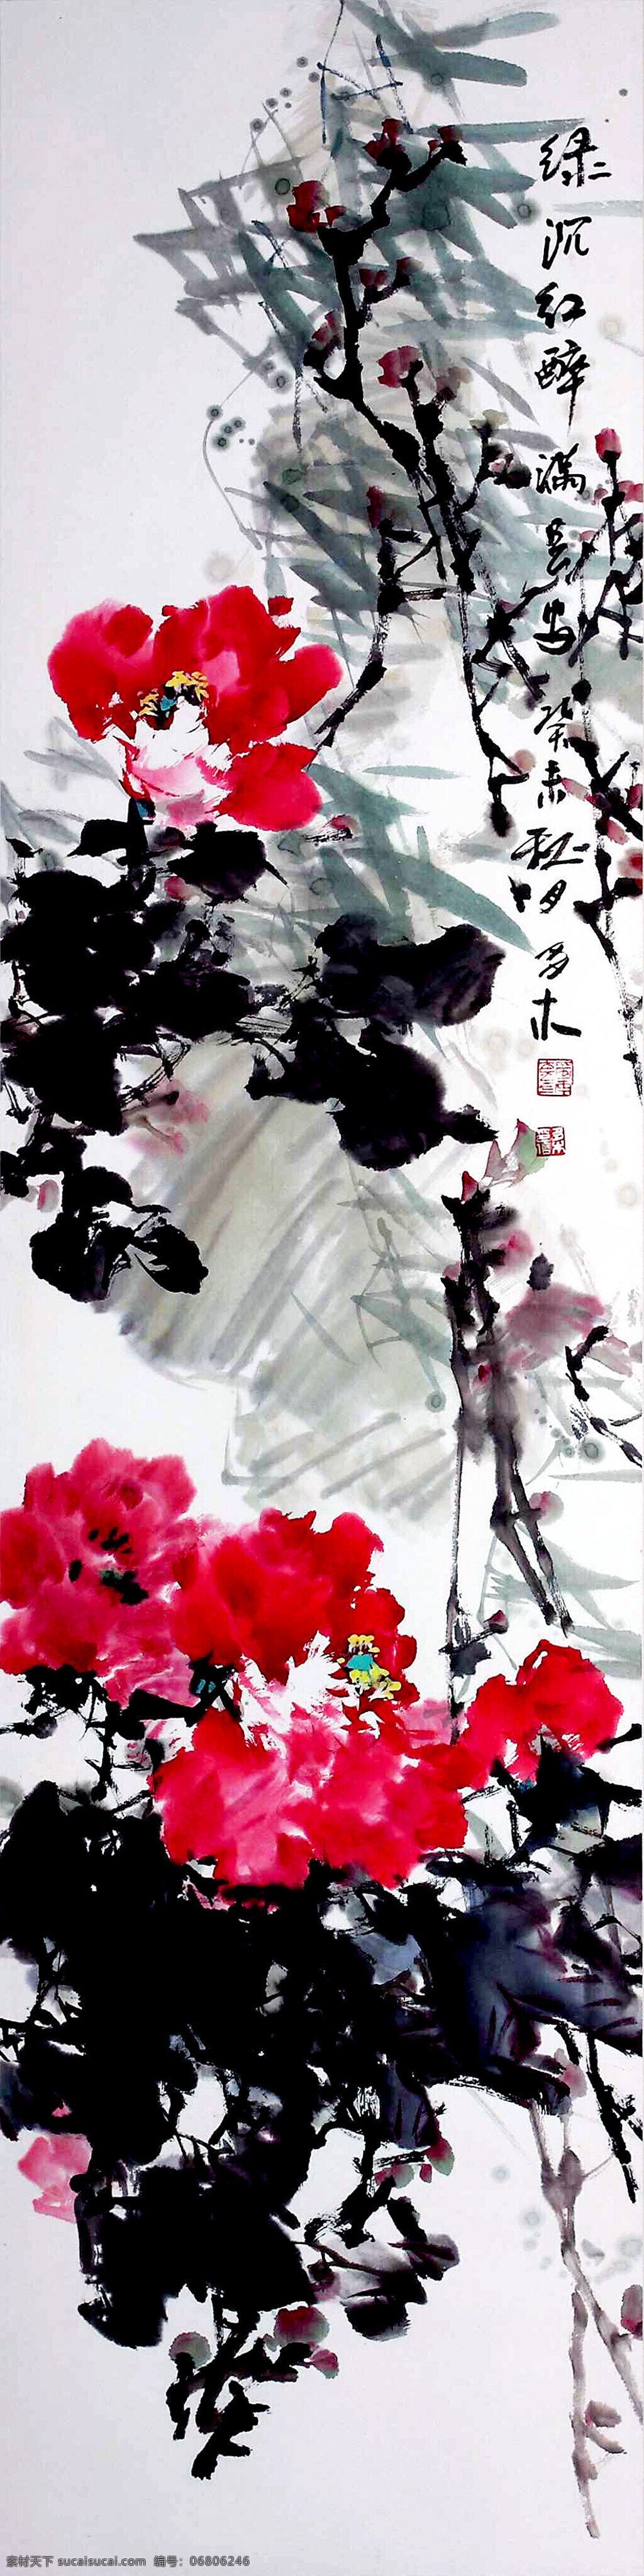 水墨 国画 牡丹 植物 印章 题字 中国画 水墨画 书画文字 文化艺术